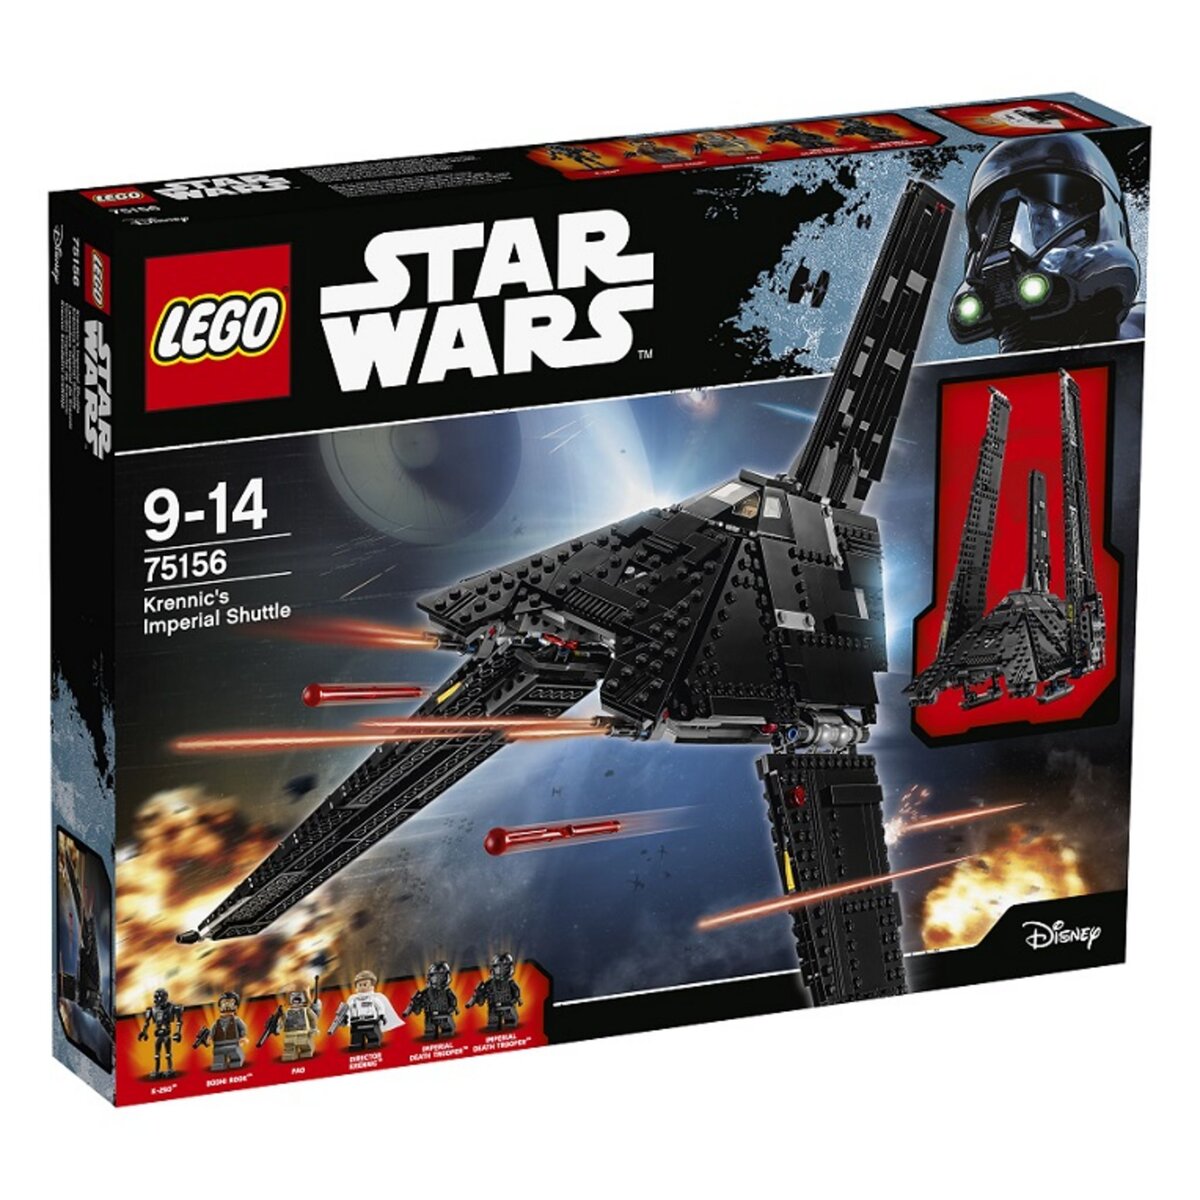 LEGO Star Wars 75156 - Krennic's Imperial Shuttle